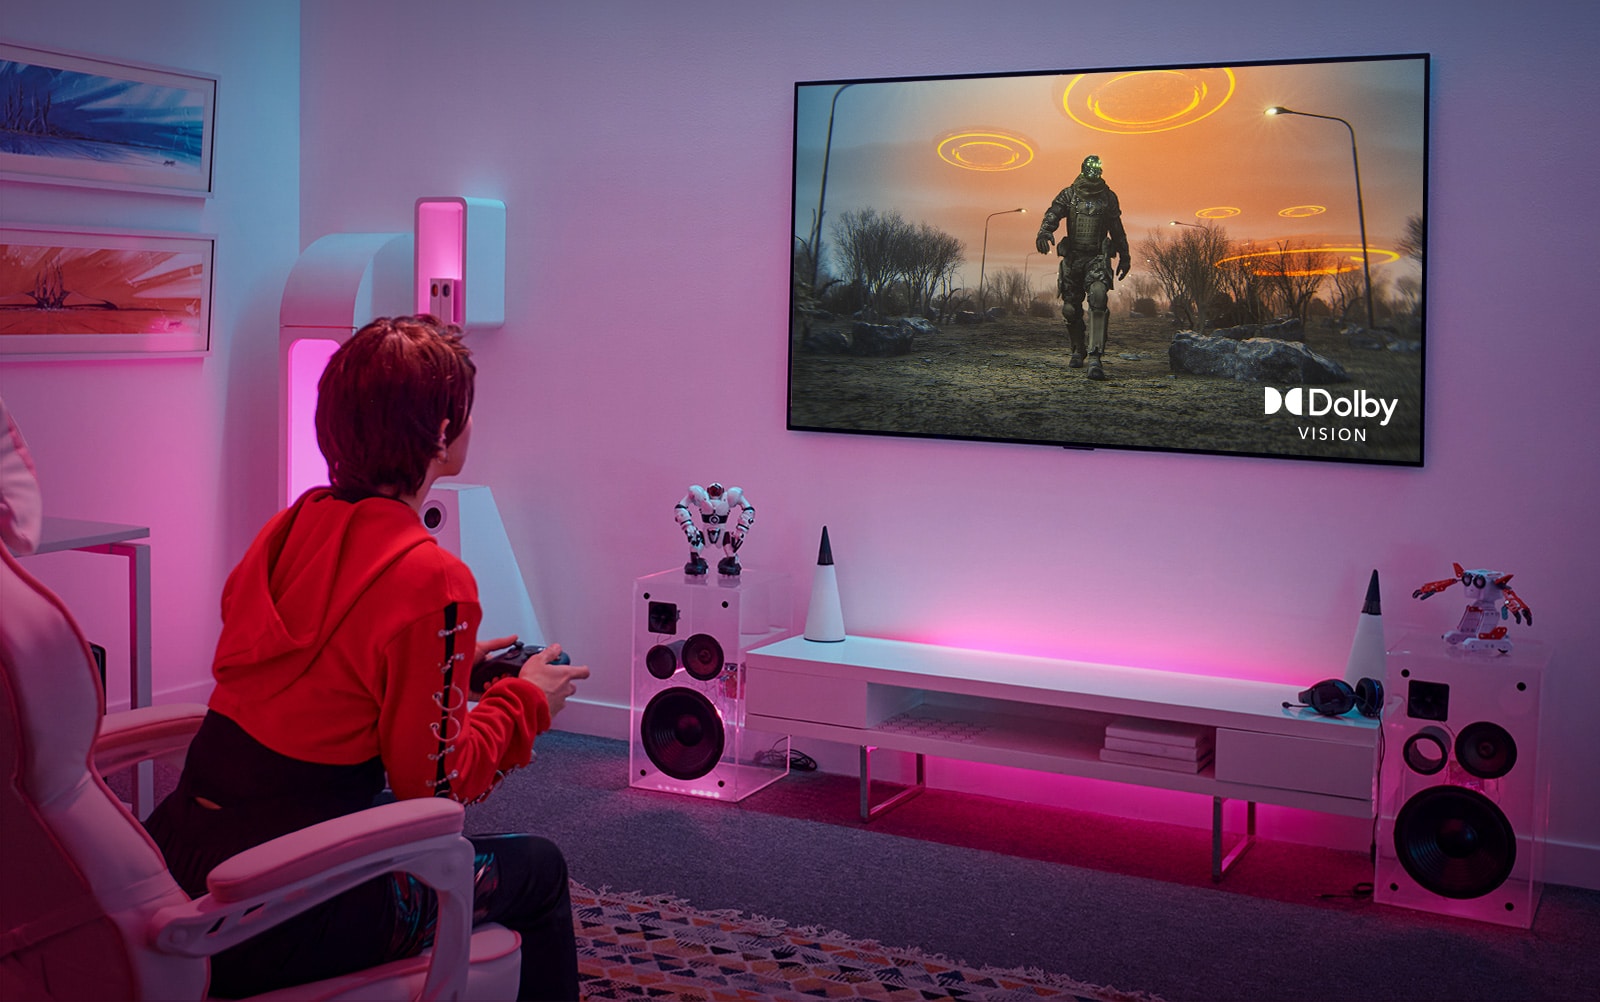 صورة توضح فتاة تلعب لعبة تقمص الأدوار بجهاز تحكم وشاشة تلفزيون كبيرة معلقة على الجدار في غرفتها الوردية.